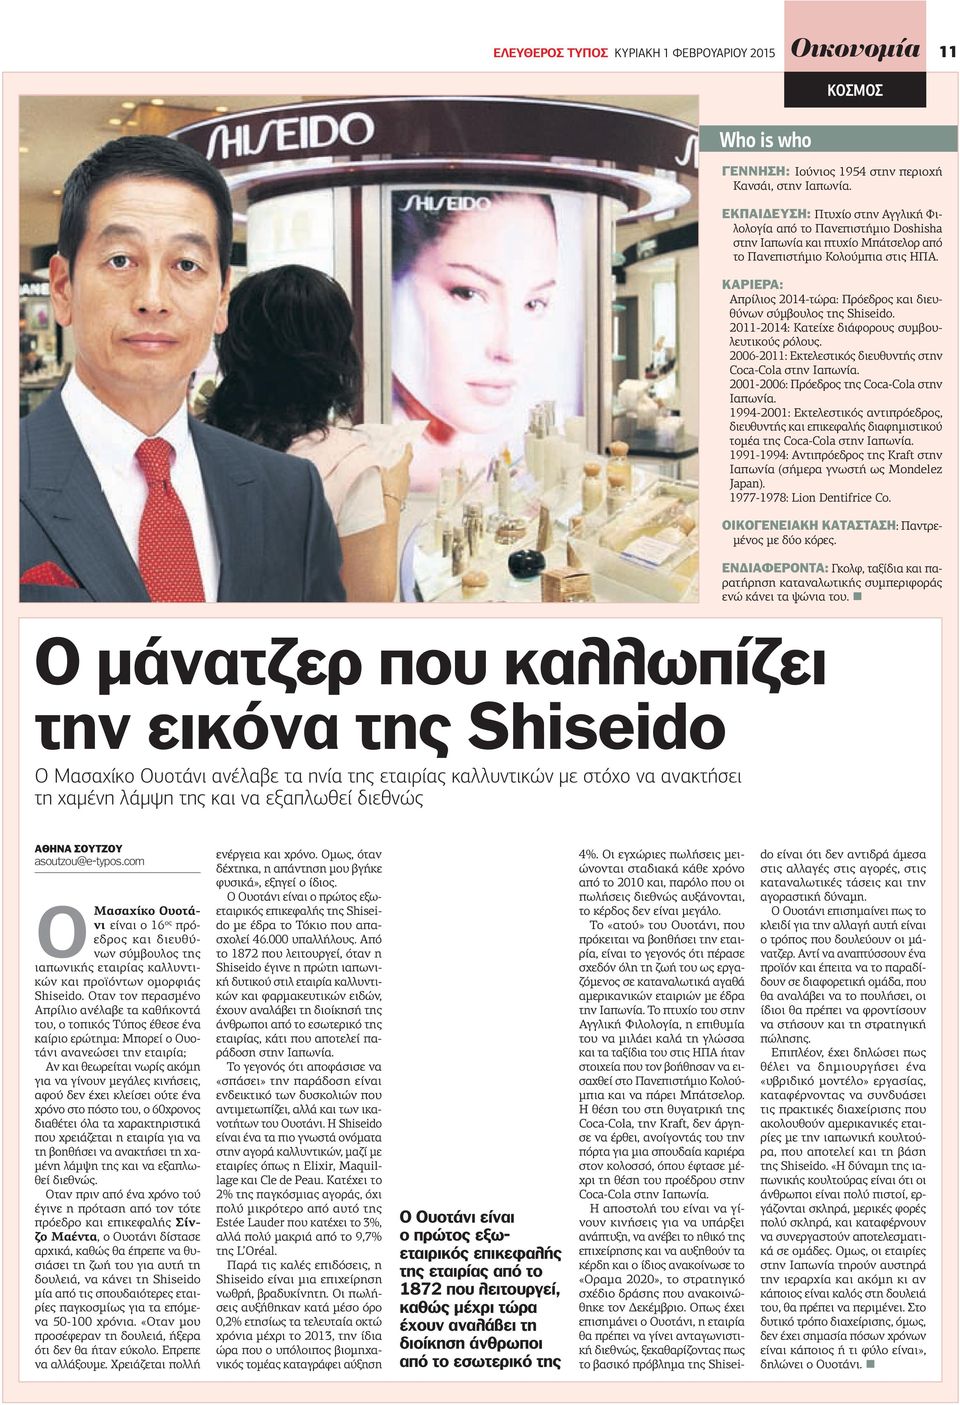 ΚΑΡΙΕΡΑ: Απρίλιος 2014-τώρα: Πρόεδρος και διευθύνων σύµβουλος της Shiseido. 2011-2014: Κατείχε διάφορους συµβουλευτικούς ρόλους. 2006-2011: Εκτελεστικός διευθυντής στην Coca-Cola στην Ιαπωνία.